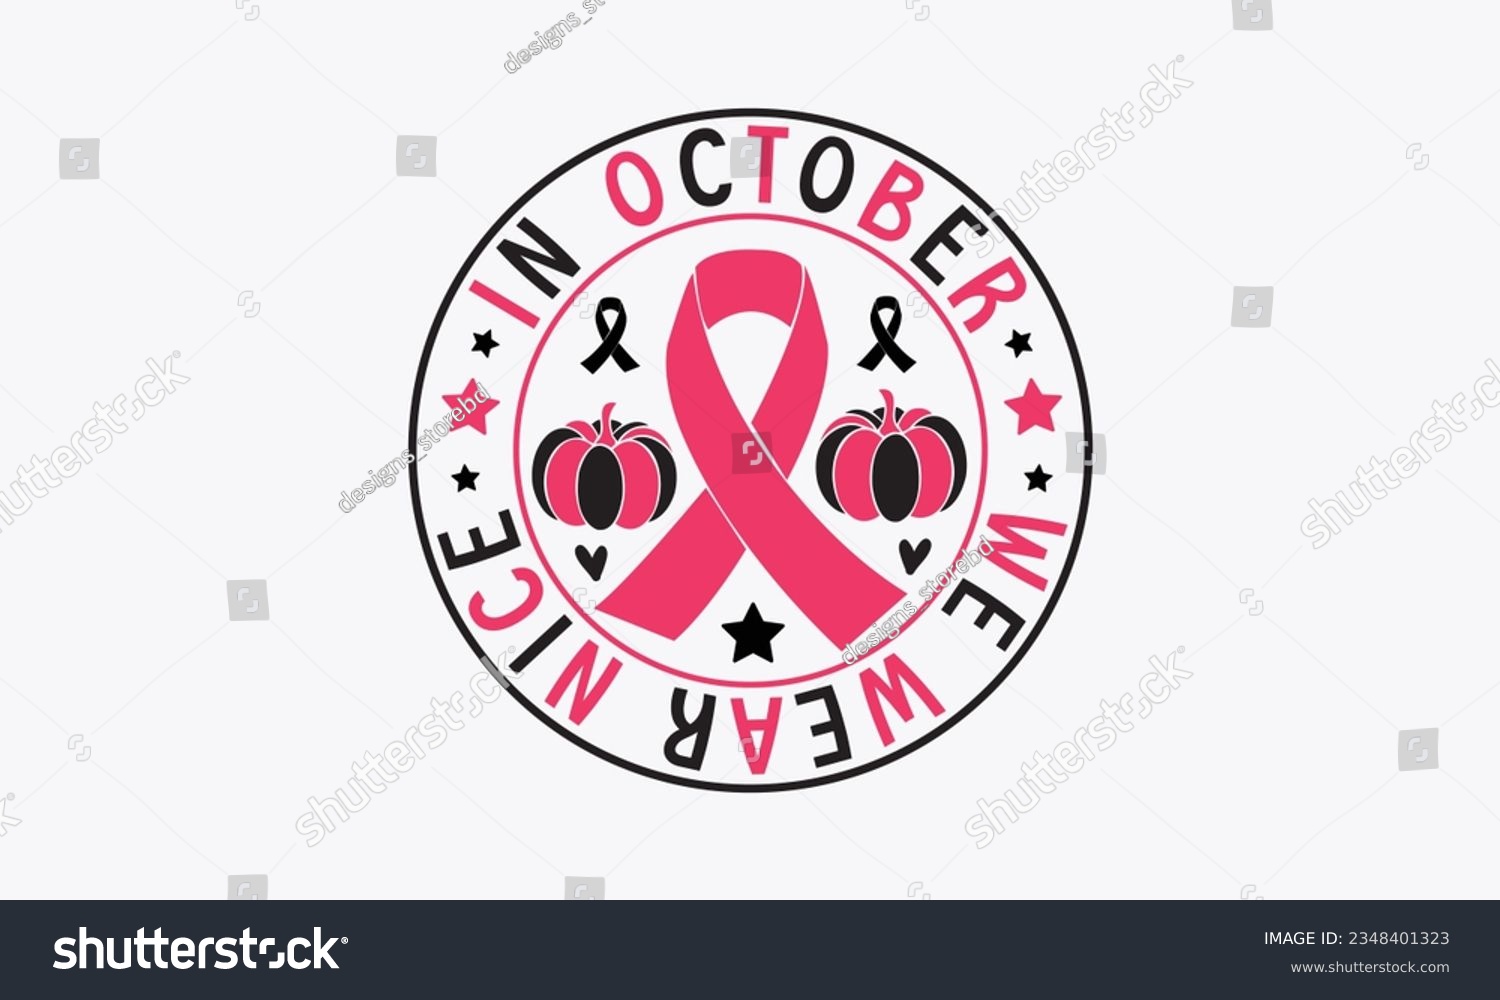 SVG of In october we wear nice svg, Breast Cancer SVG design, Cancer Awareness, Instant Download, Breast Cancer Ribbon svg, cut files, Cricut, Silhouette, Breast Cancer t shirt design Quote bundle svg